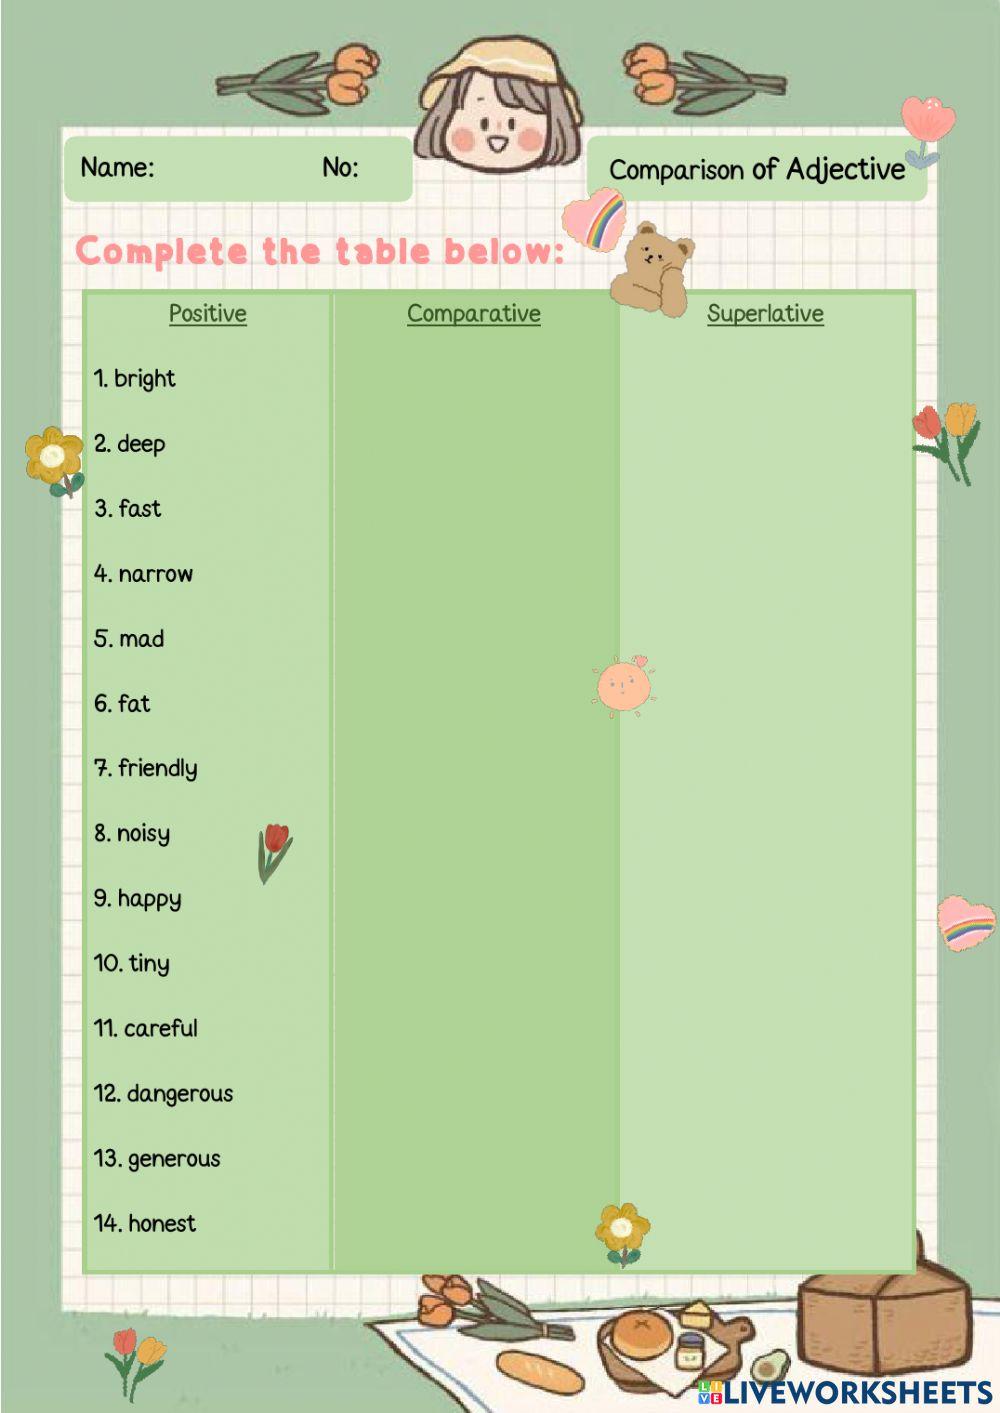 Comparison table